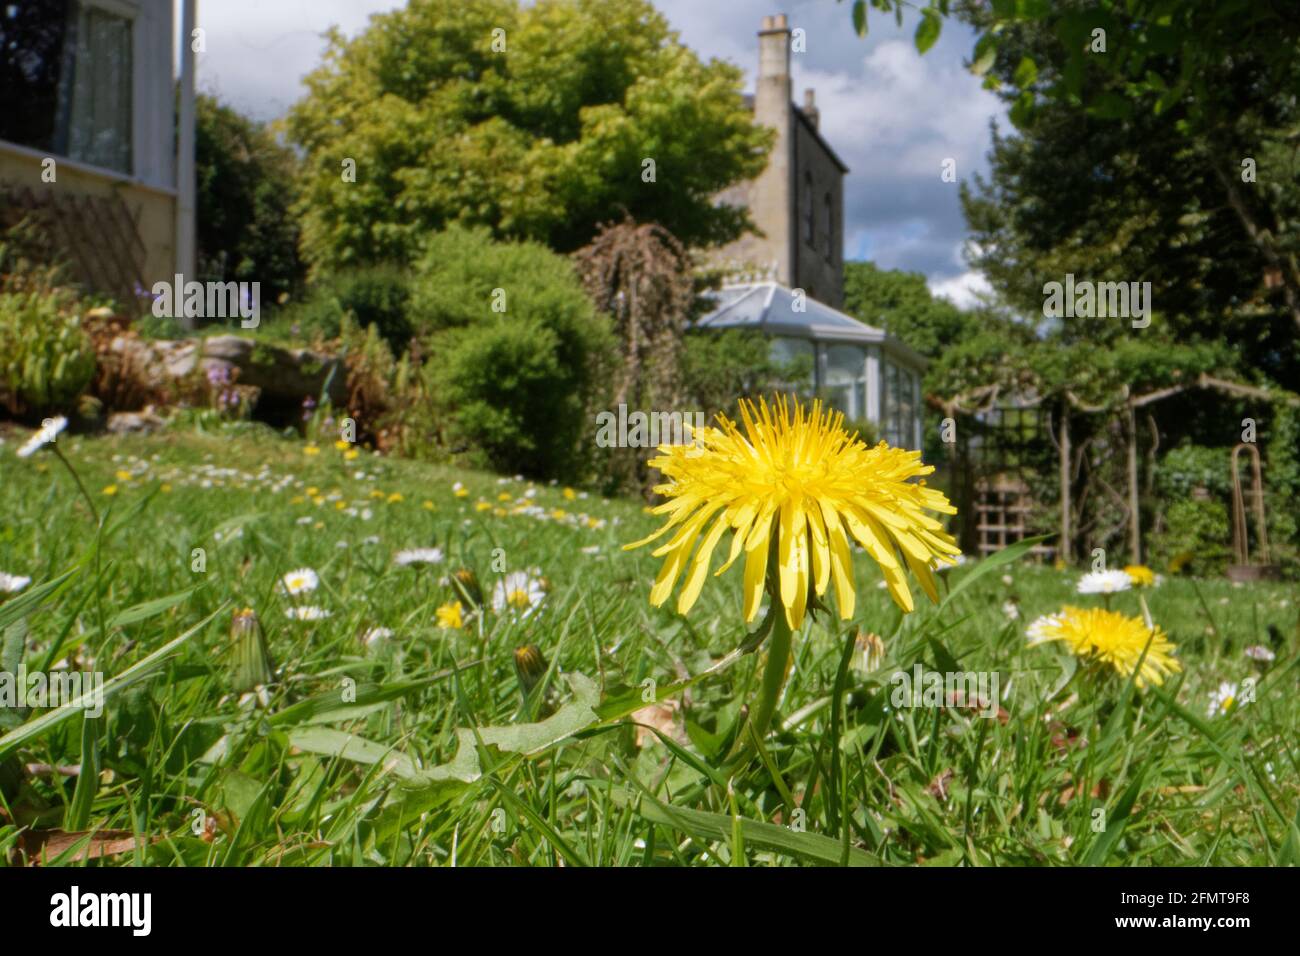 Pissenlits et pâquerettes fleurissent dans une pelouse laissée immown pour permettre aux fleurs sauvages de s'épanouir et aux insectes de se nourrir, Wiltshire Garden, Royaume-Uni, mai. Banque D'Images